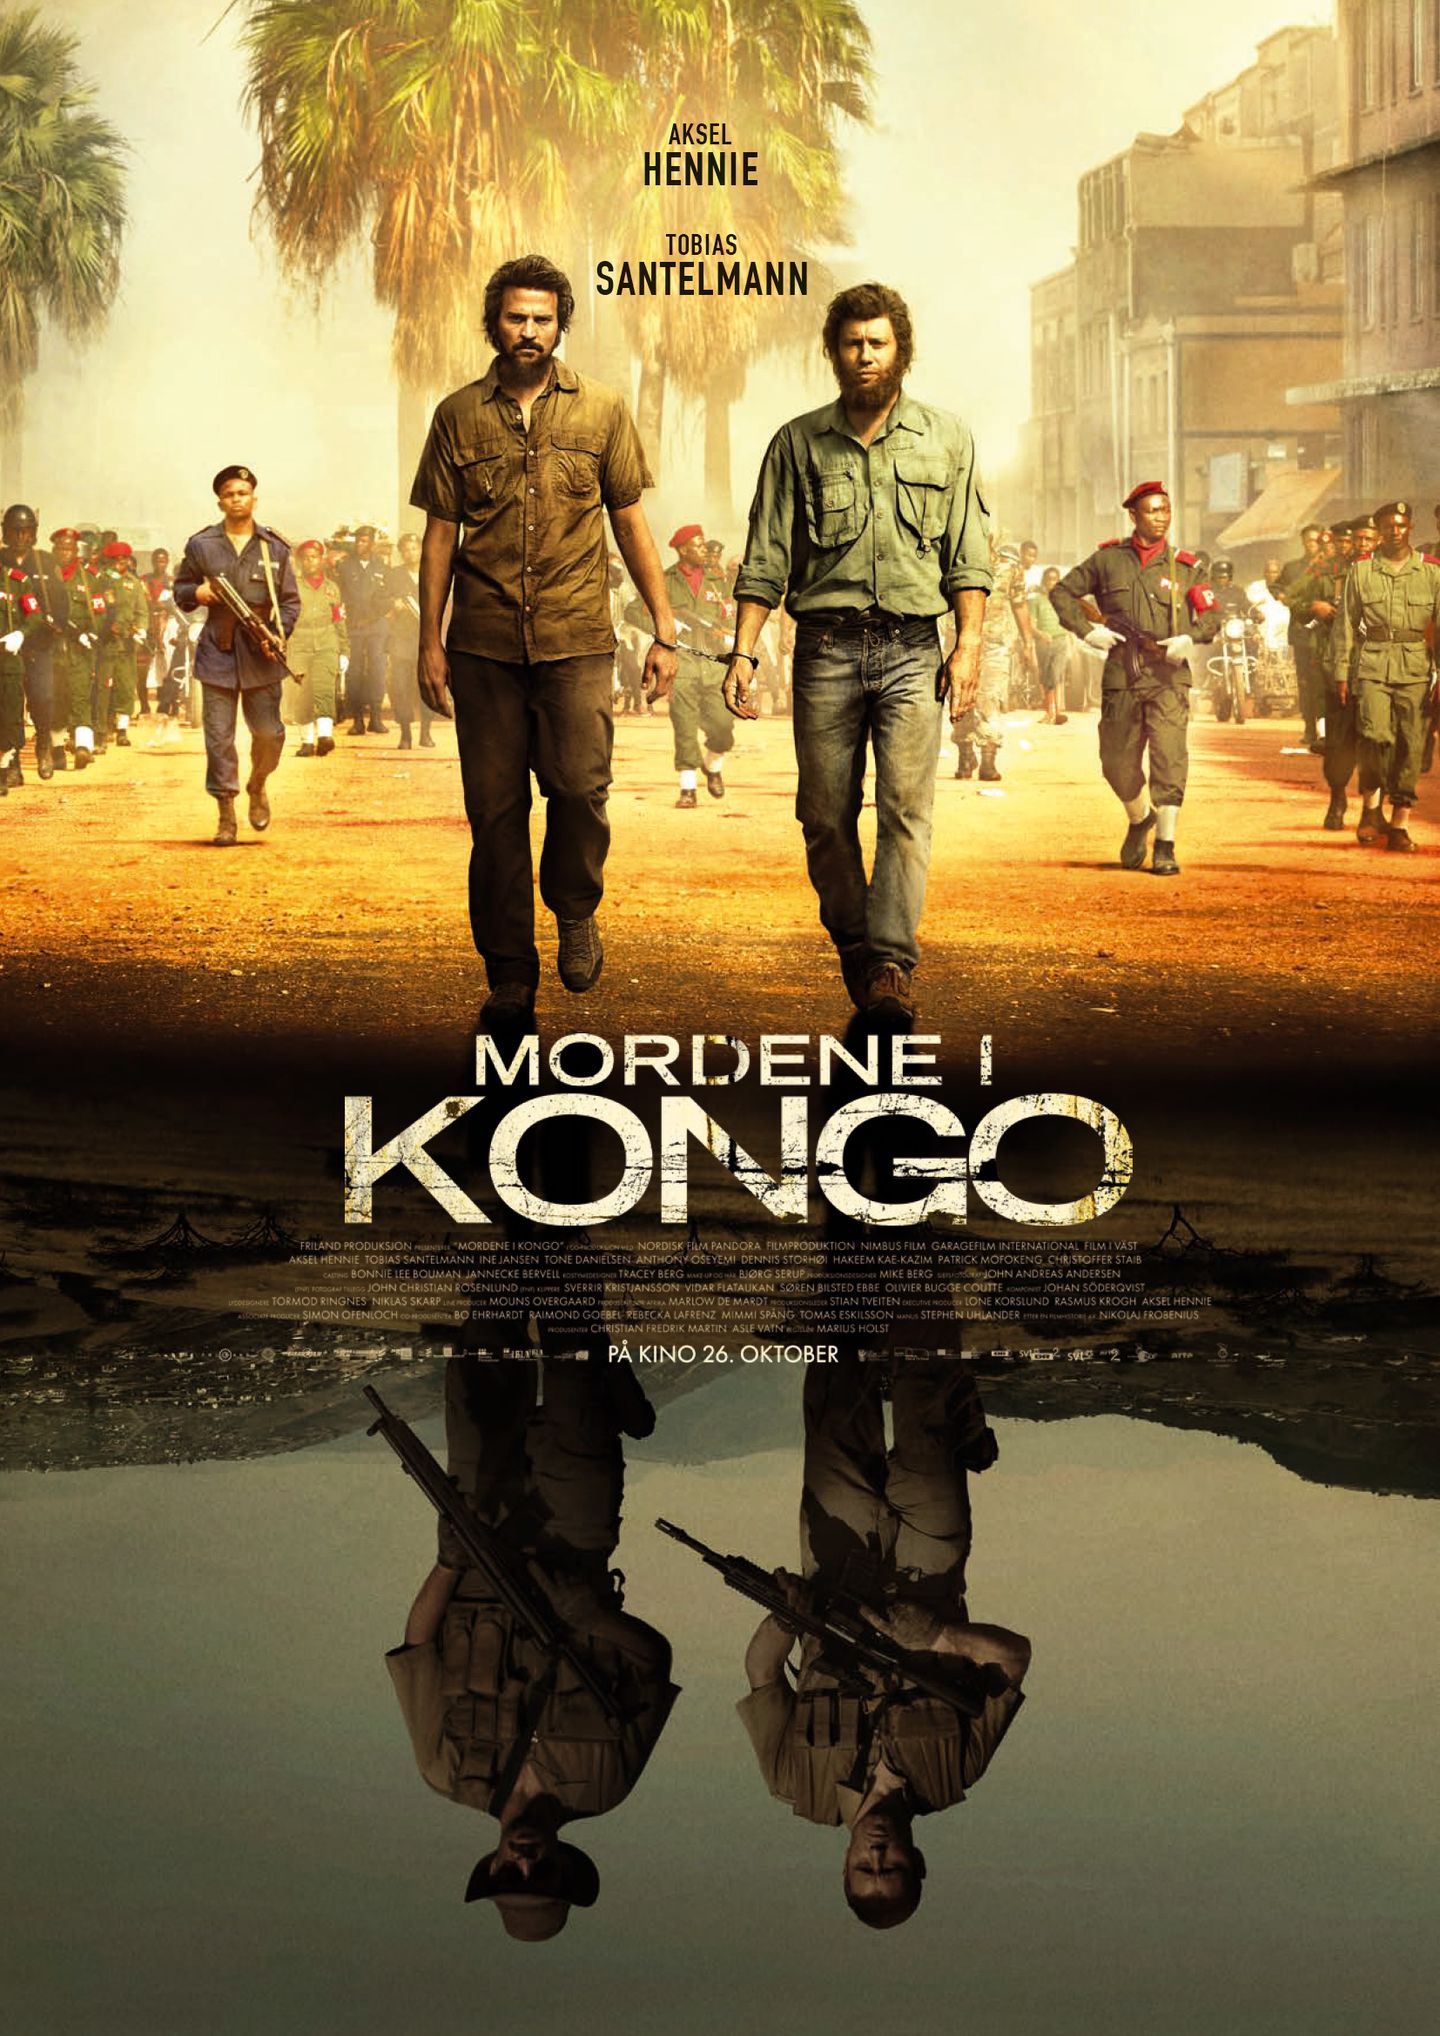 Plakat for 'Mordene i Kongo'